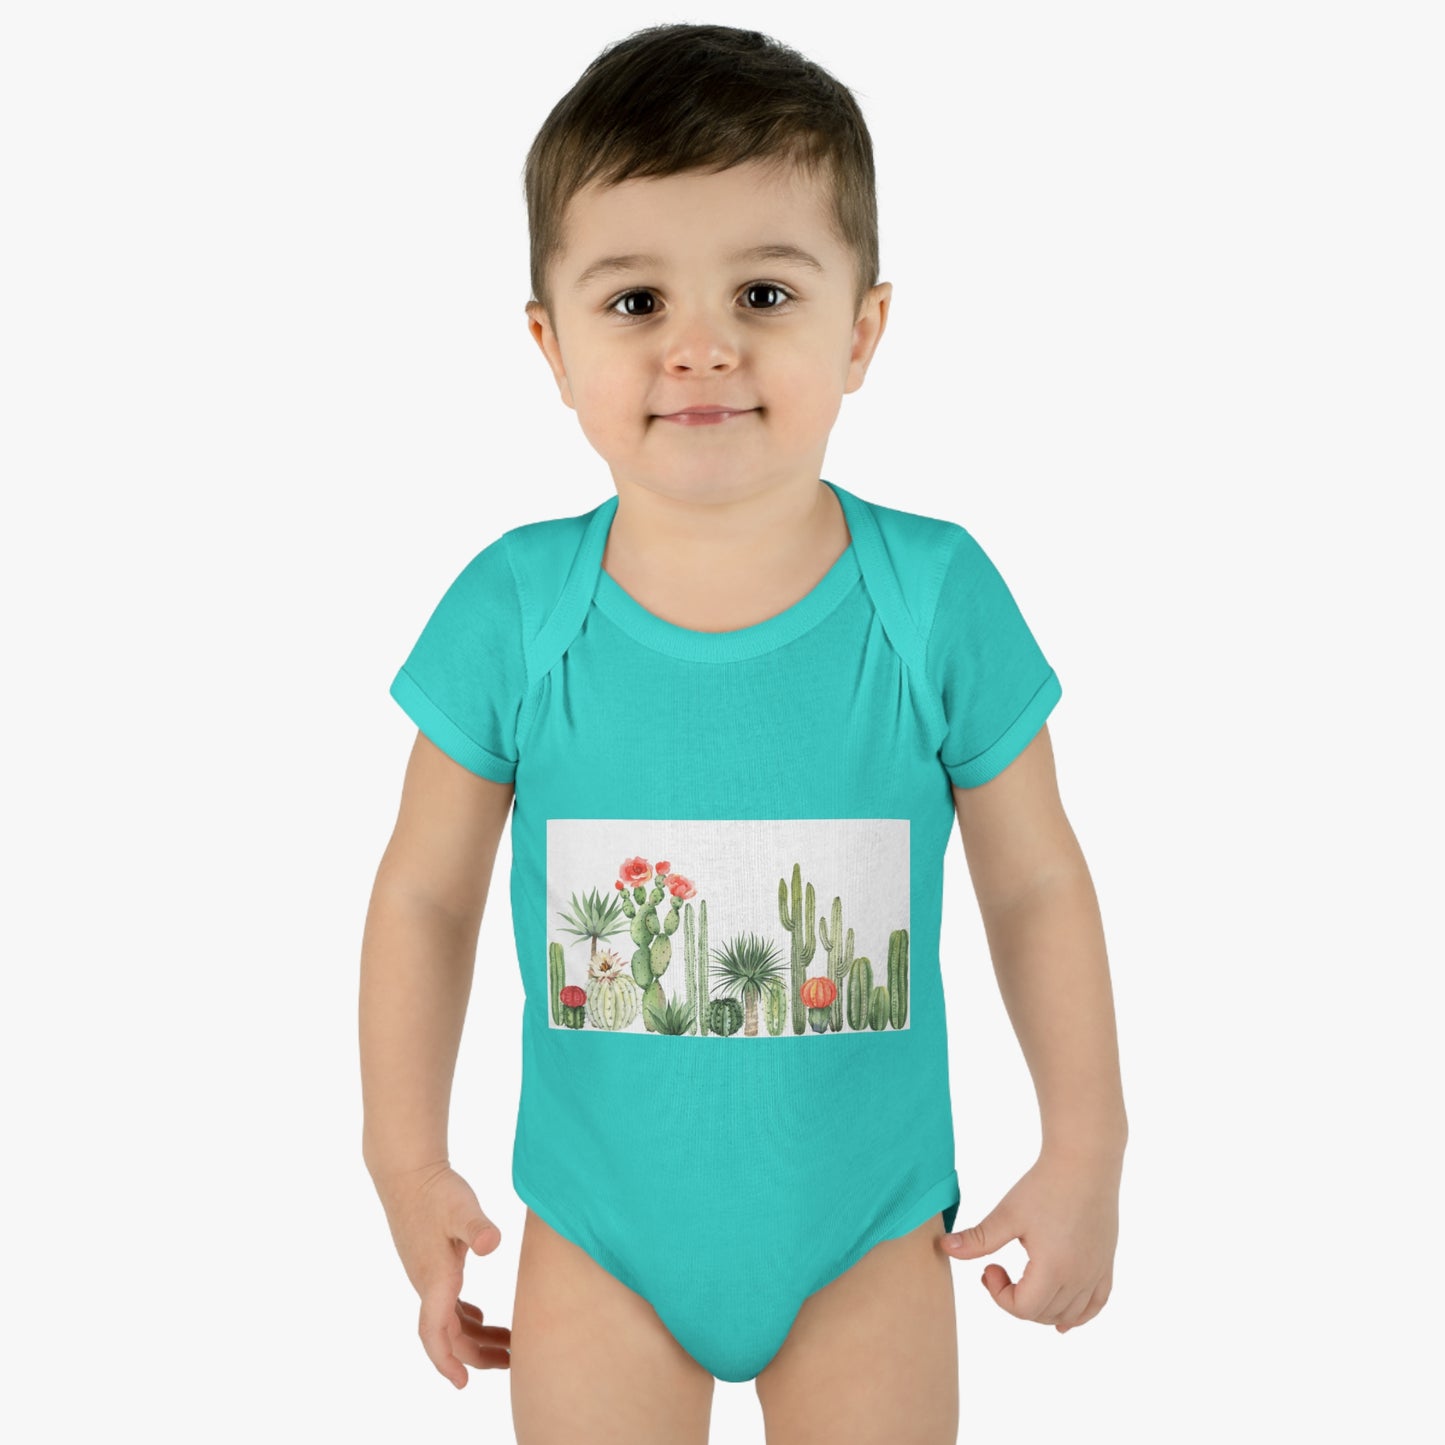 Baby Bodysuit - Cactus Garden